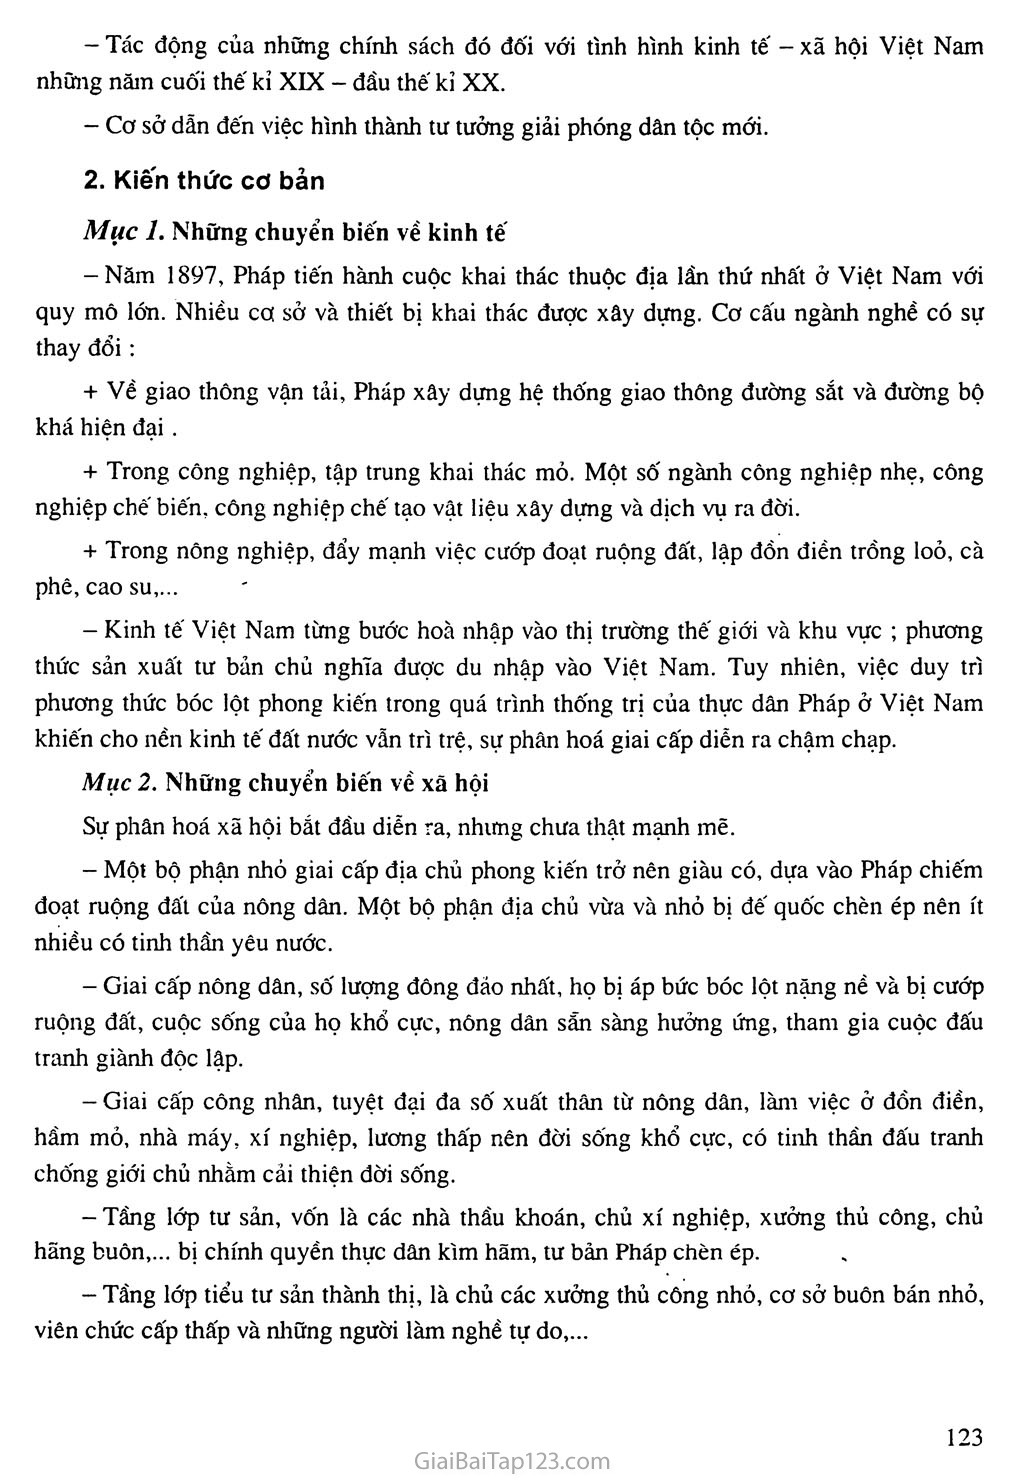 Bài 22: Xã hội Việt Nam trong cuộc khai thác lần thứ nhất của thực dân Pháp trang 2